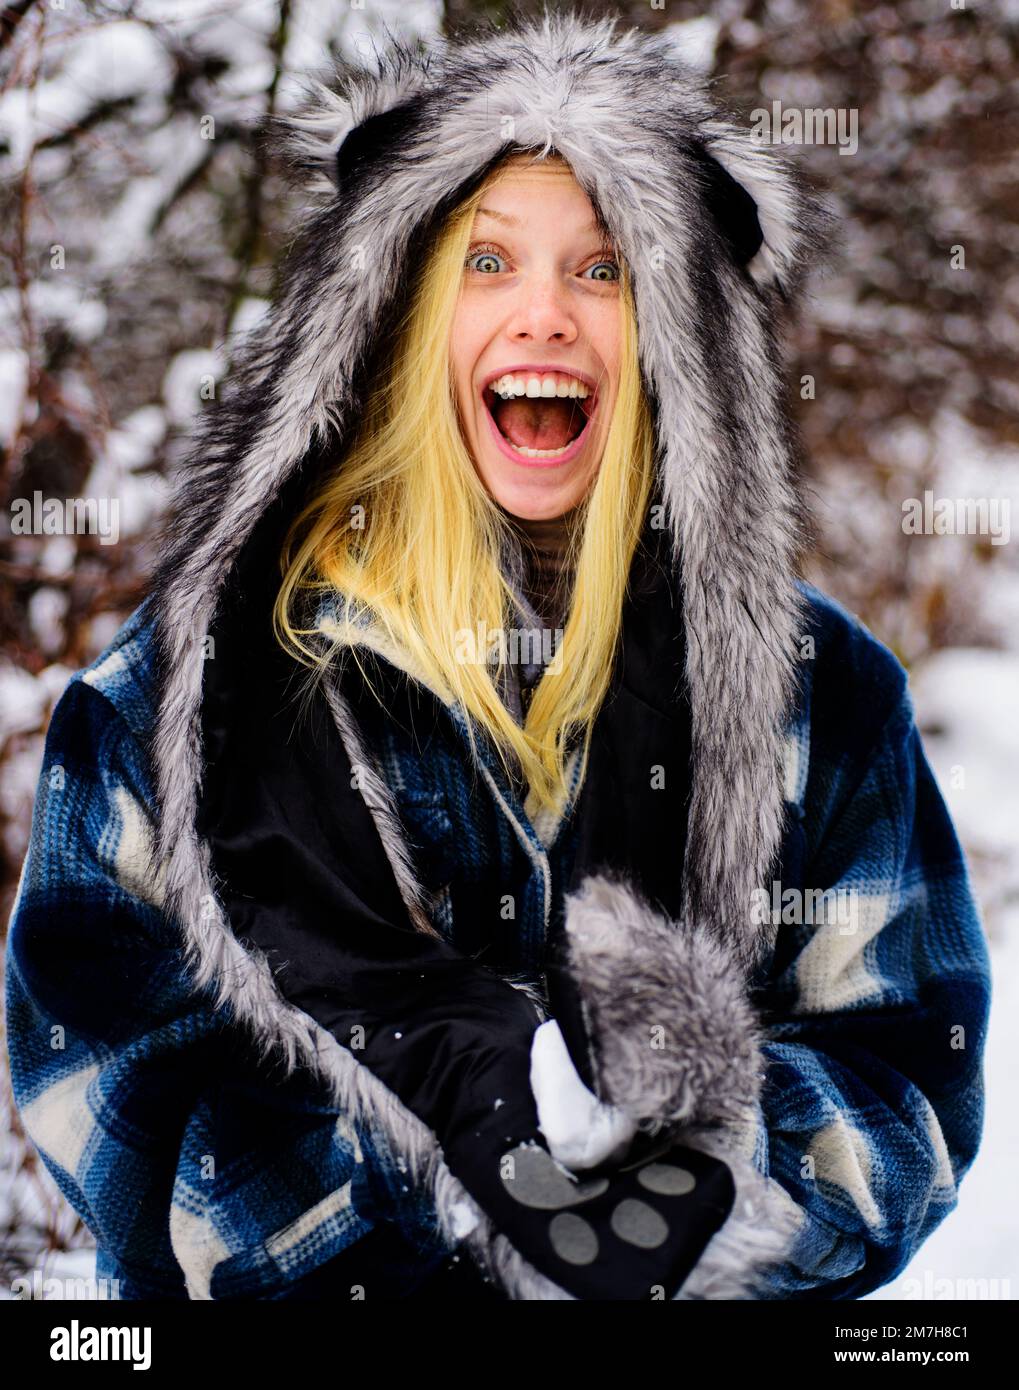 Mujer en ropa de invierno en el parque cubierto de nieve